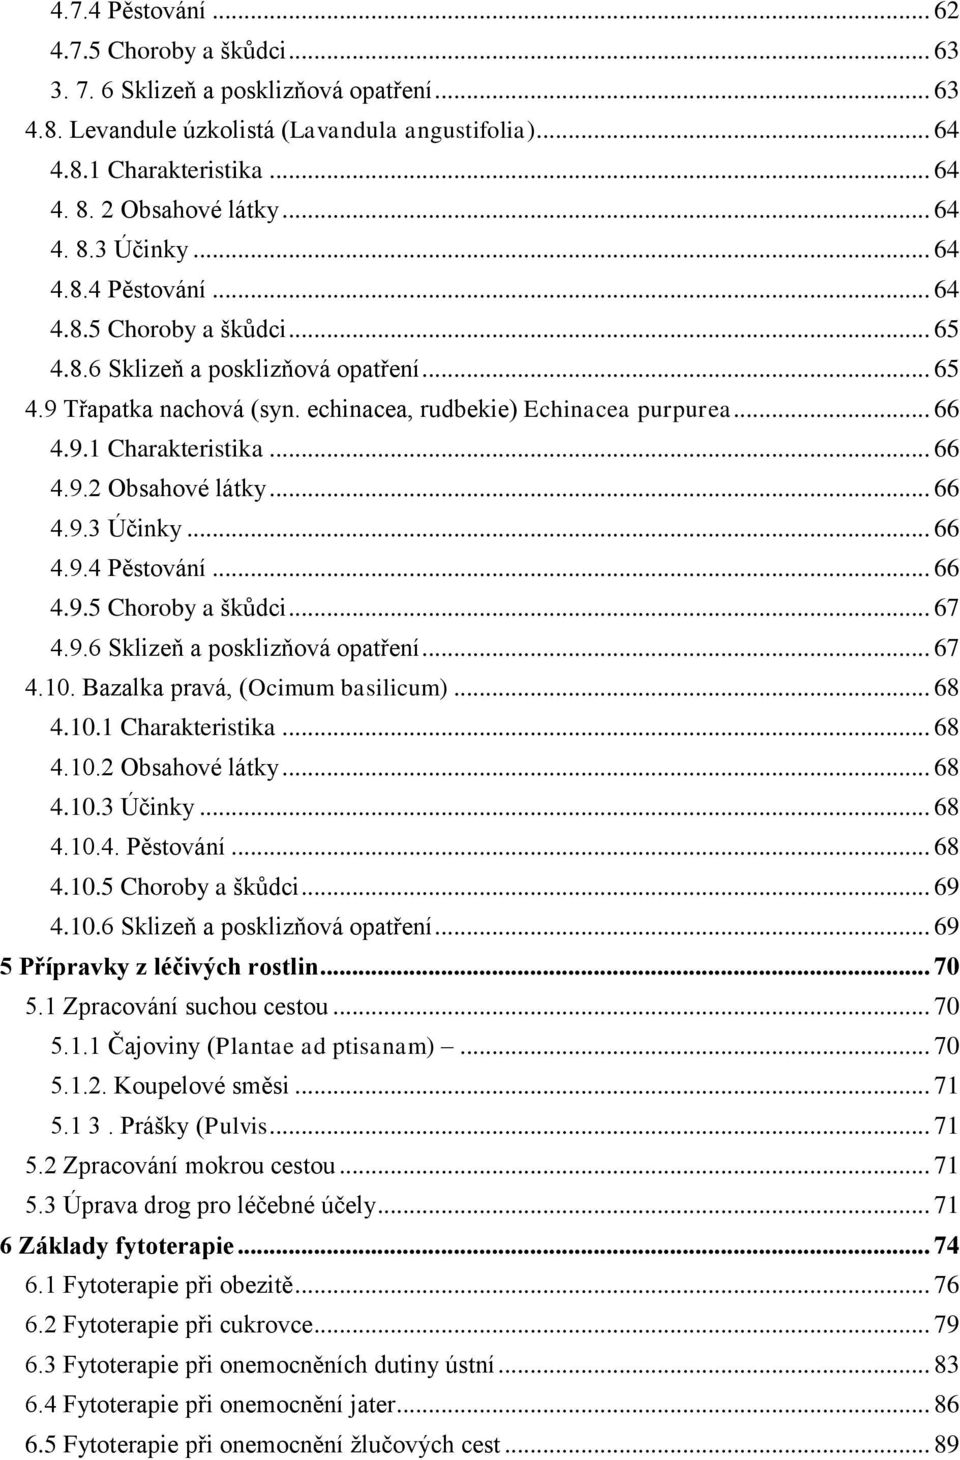 echinacea, rudbekie) Echinacea purpurea... 66 4.9.1 Charakteristika... 66 4.9.2 Obsahové látky... 66 4.9.3 Účinky... 66 4.9.4 Pěstování... 66 4.9.5 Choroby a škůdci... 67 4.9.6 Sklizeň a posklizňová opatření.